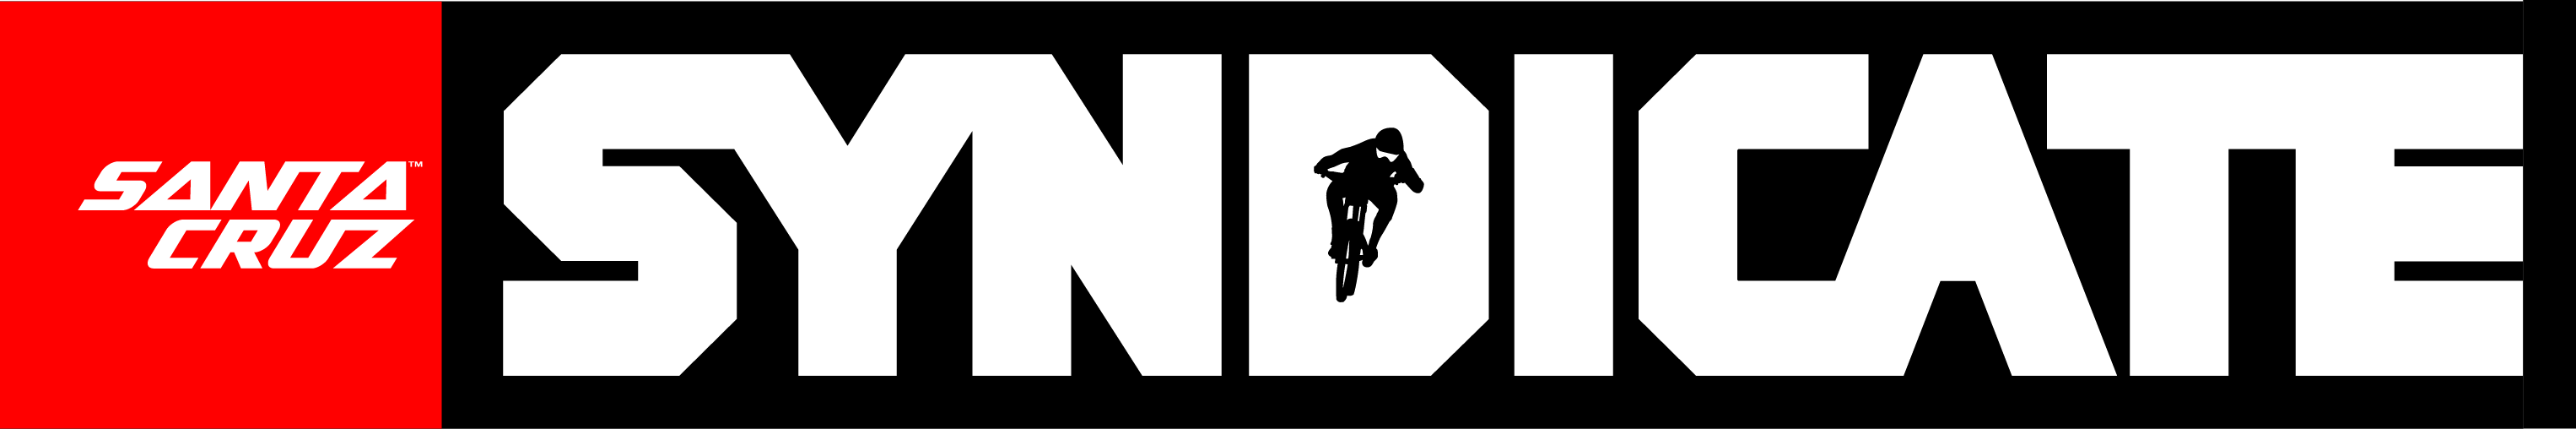 Santa Cruz Bikes Logo - santa_cruz_syndicate_invert.png | Santa Cruz Bicycles